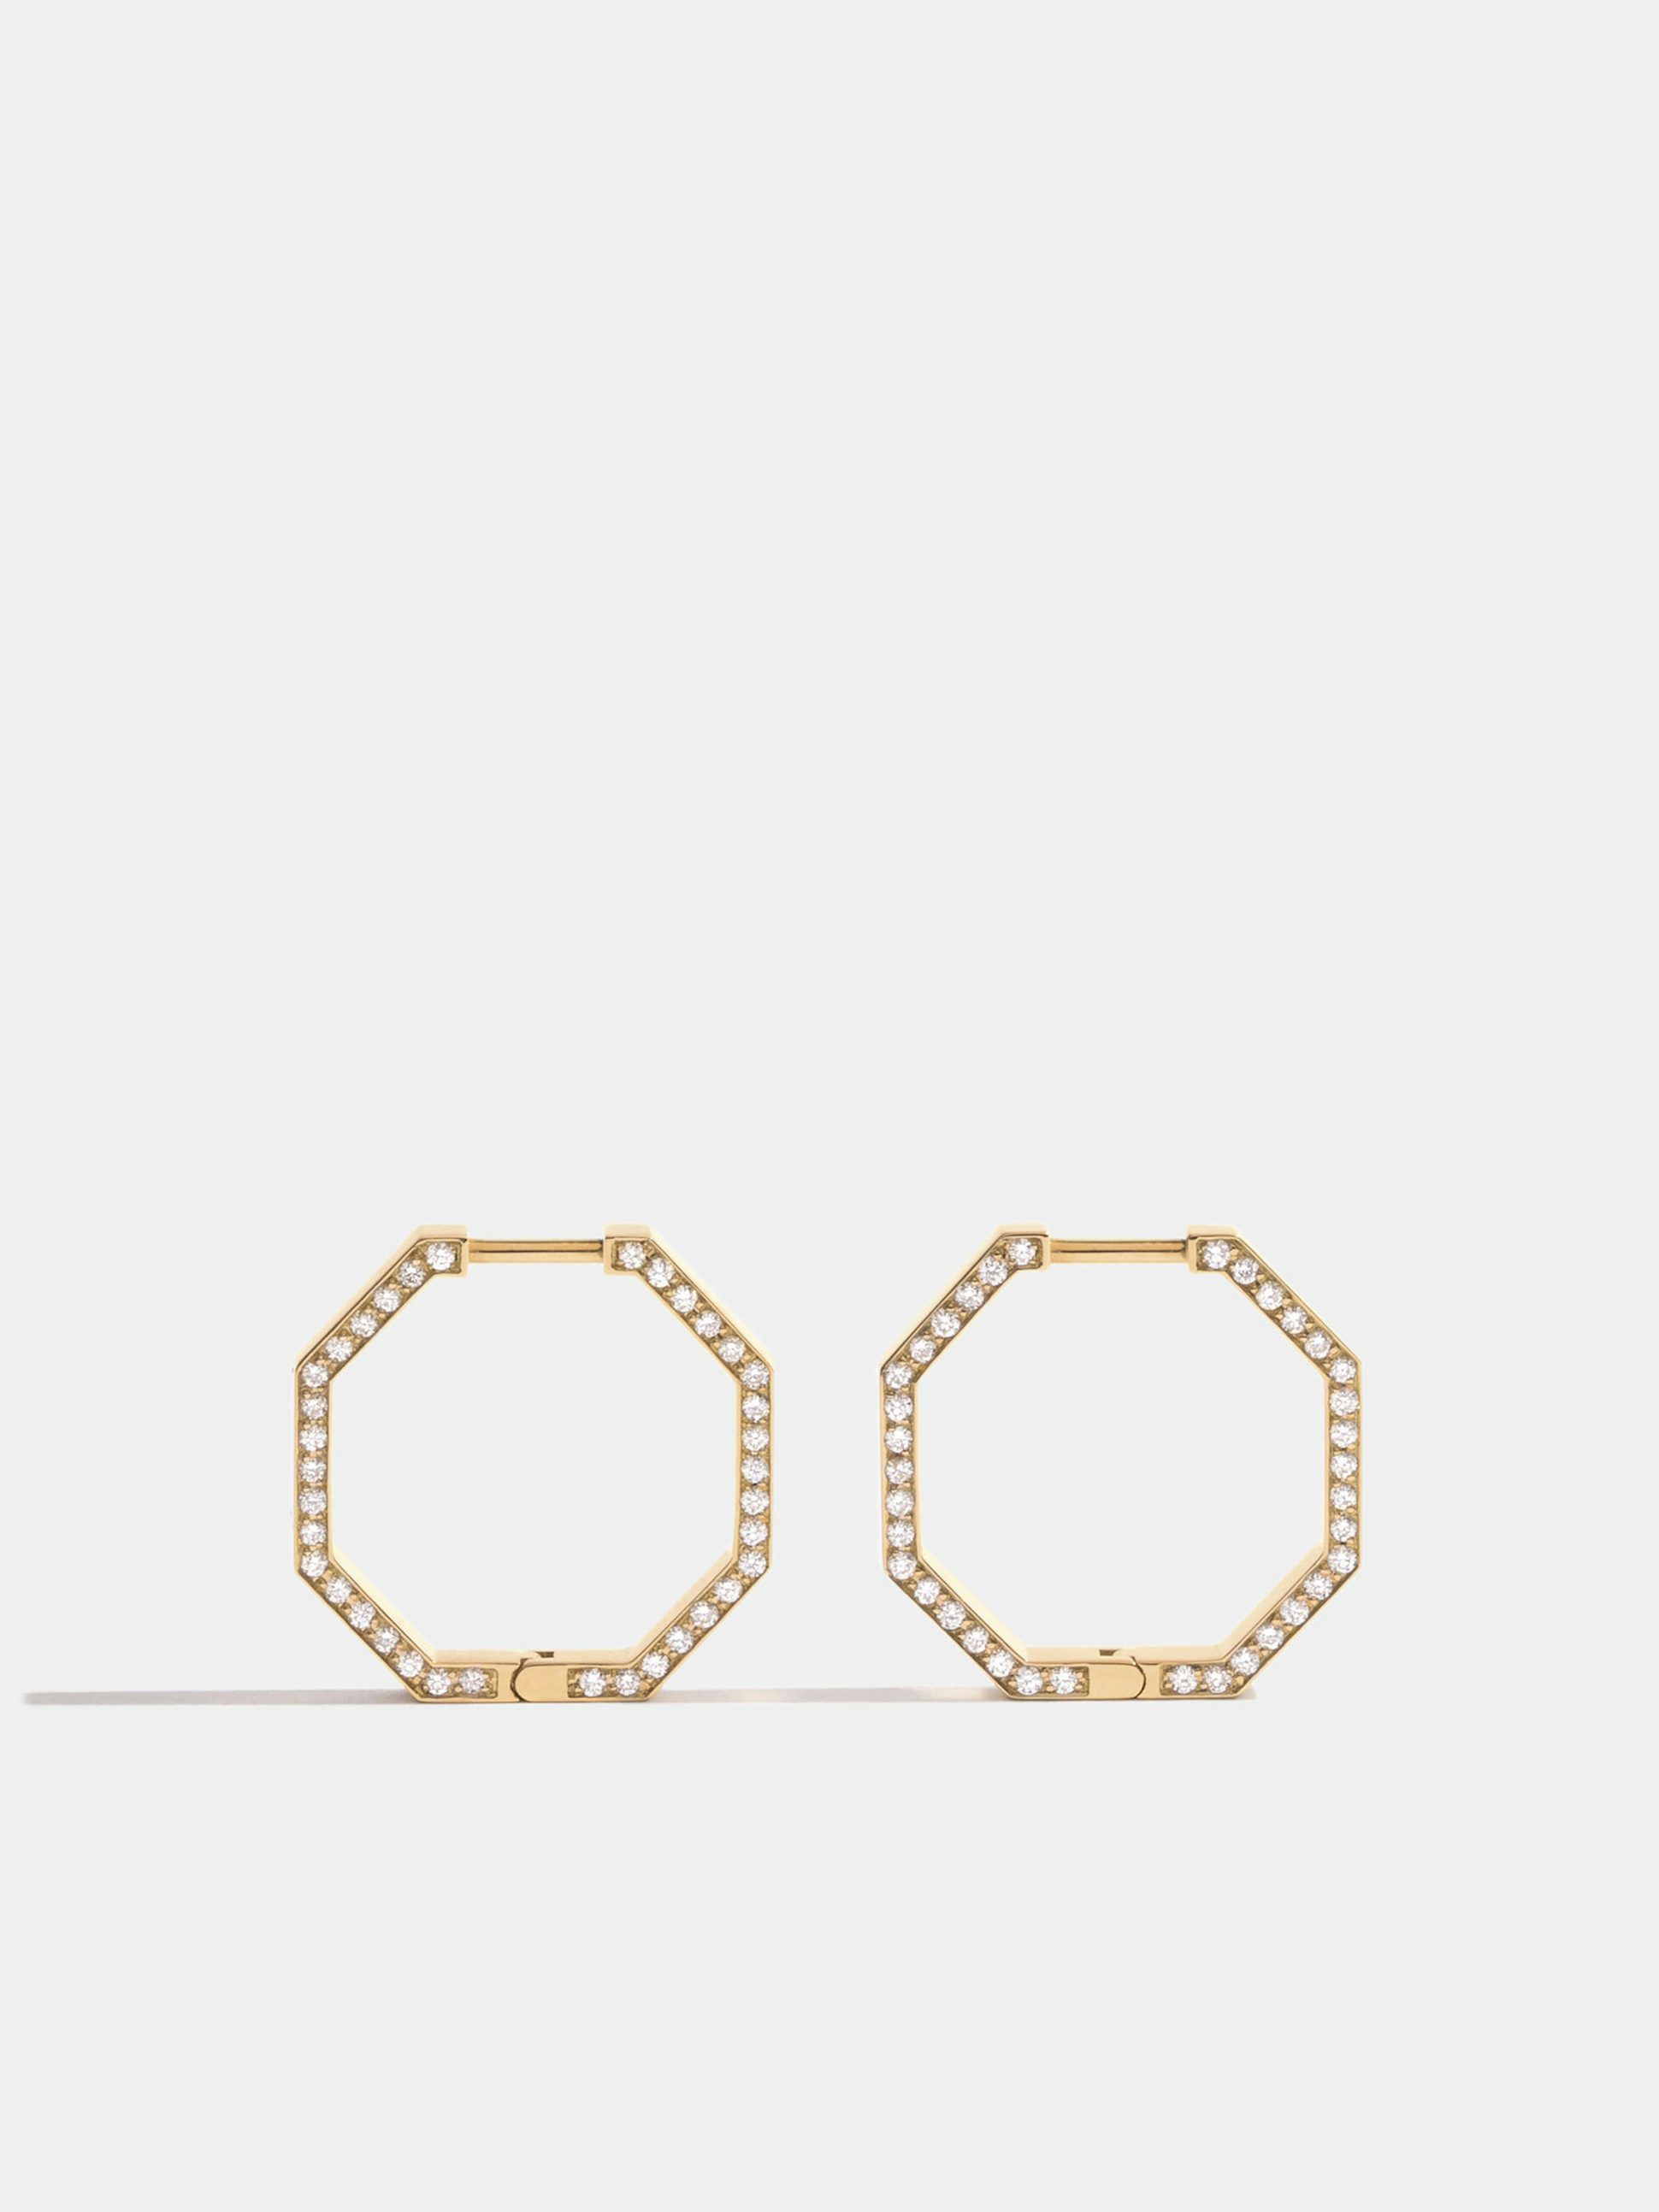 Boucle d'oreille Octogone en Or jaune éthique 18 carats certifié Fairmined (18mm) et pavée de diamants de synthèse sur la tranche, l'unité.